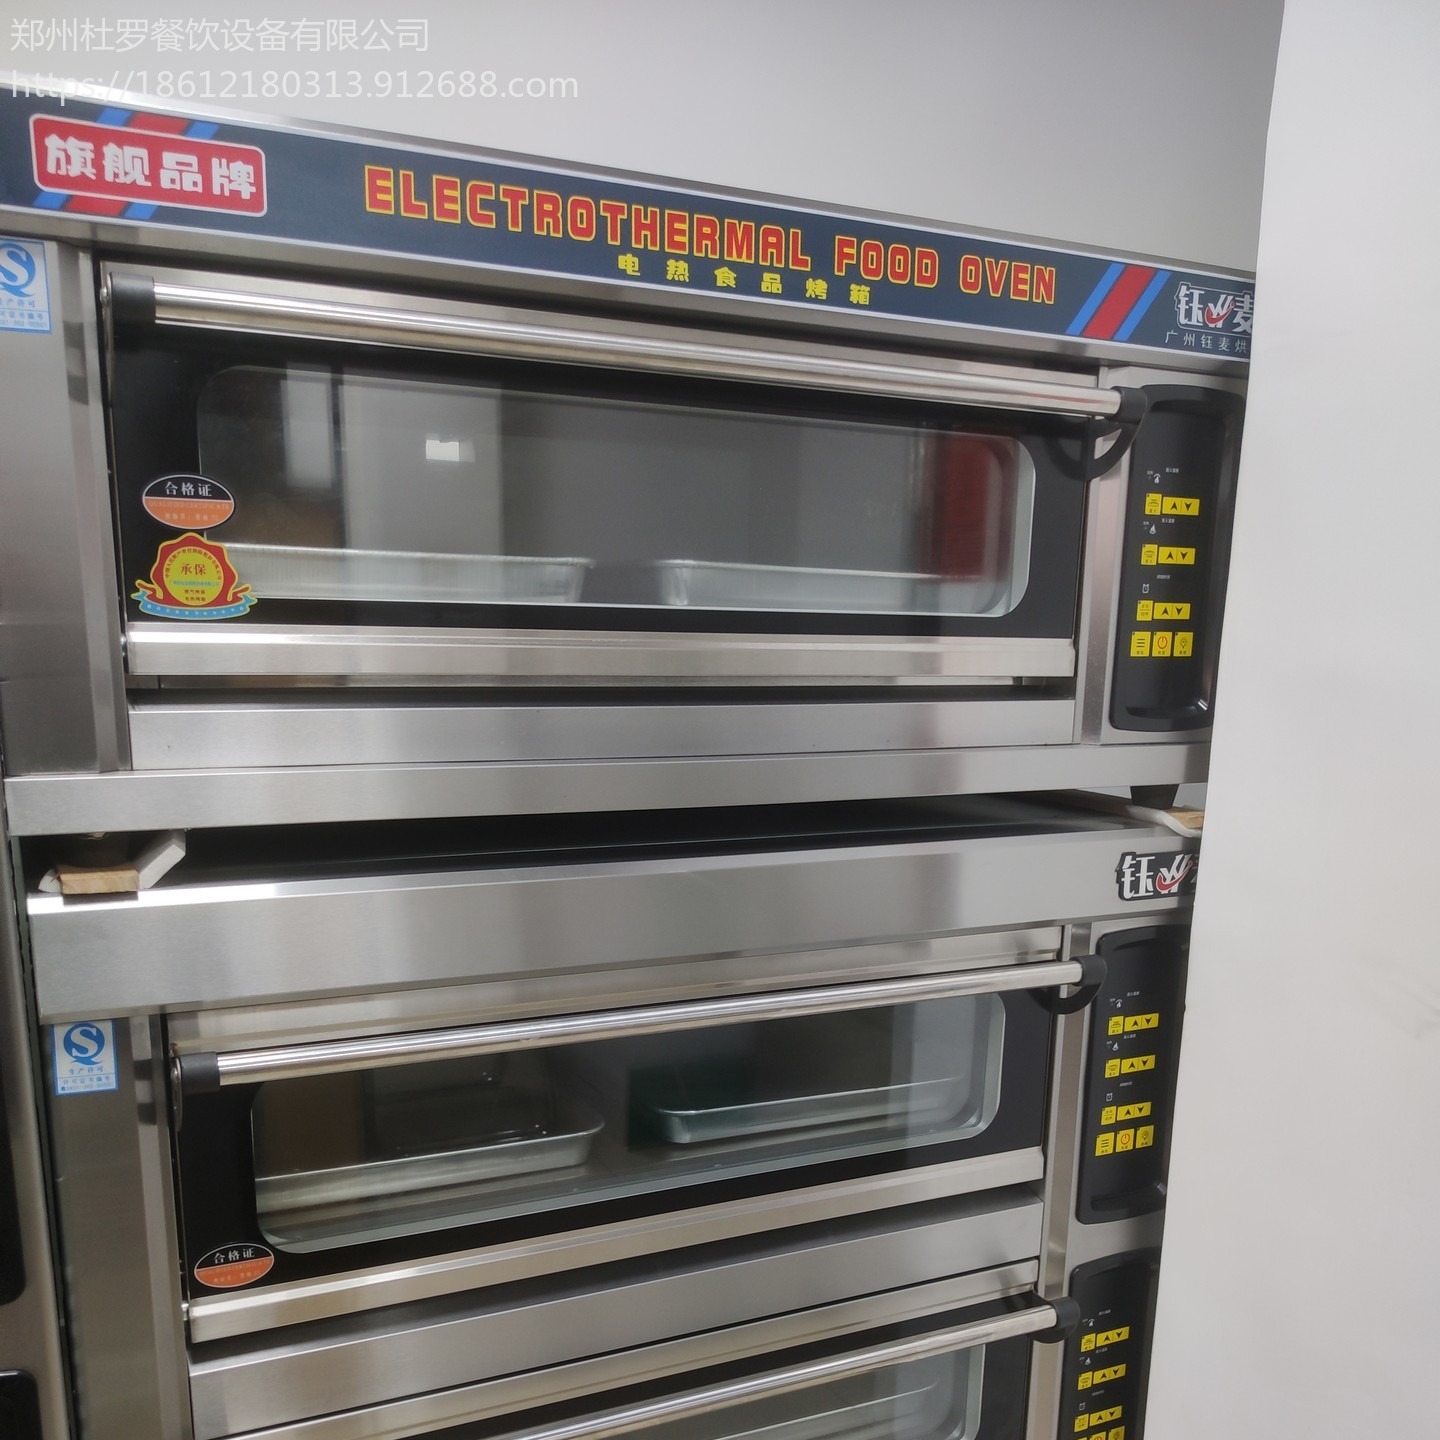 电脑版带定时烤箱  郑州烘培店一层烤箱 烤饼专用电烤炉